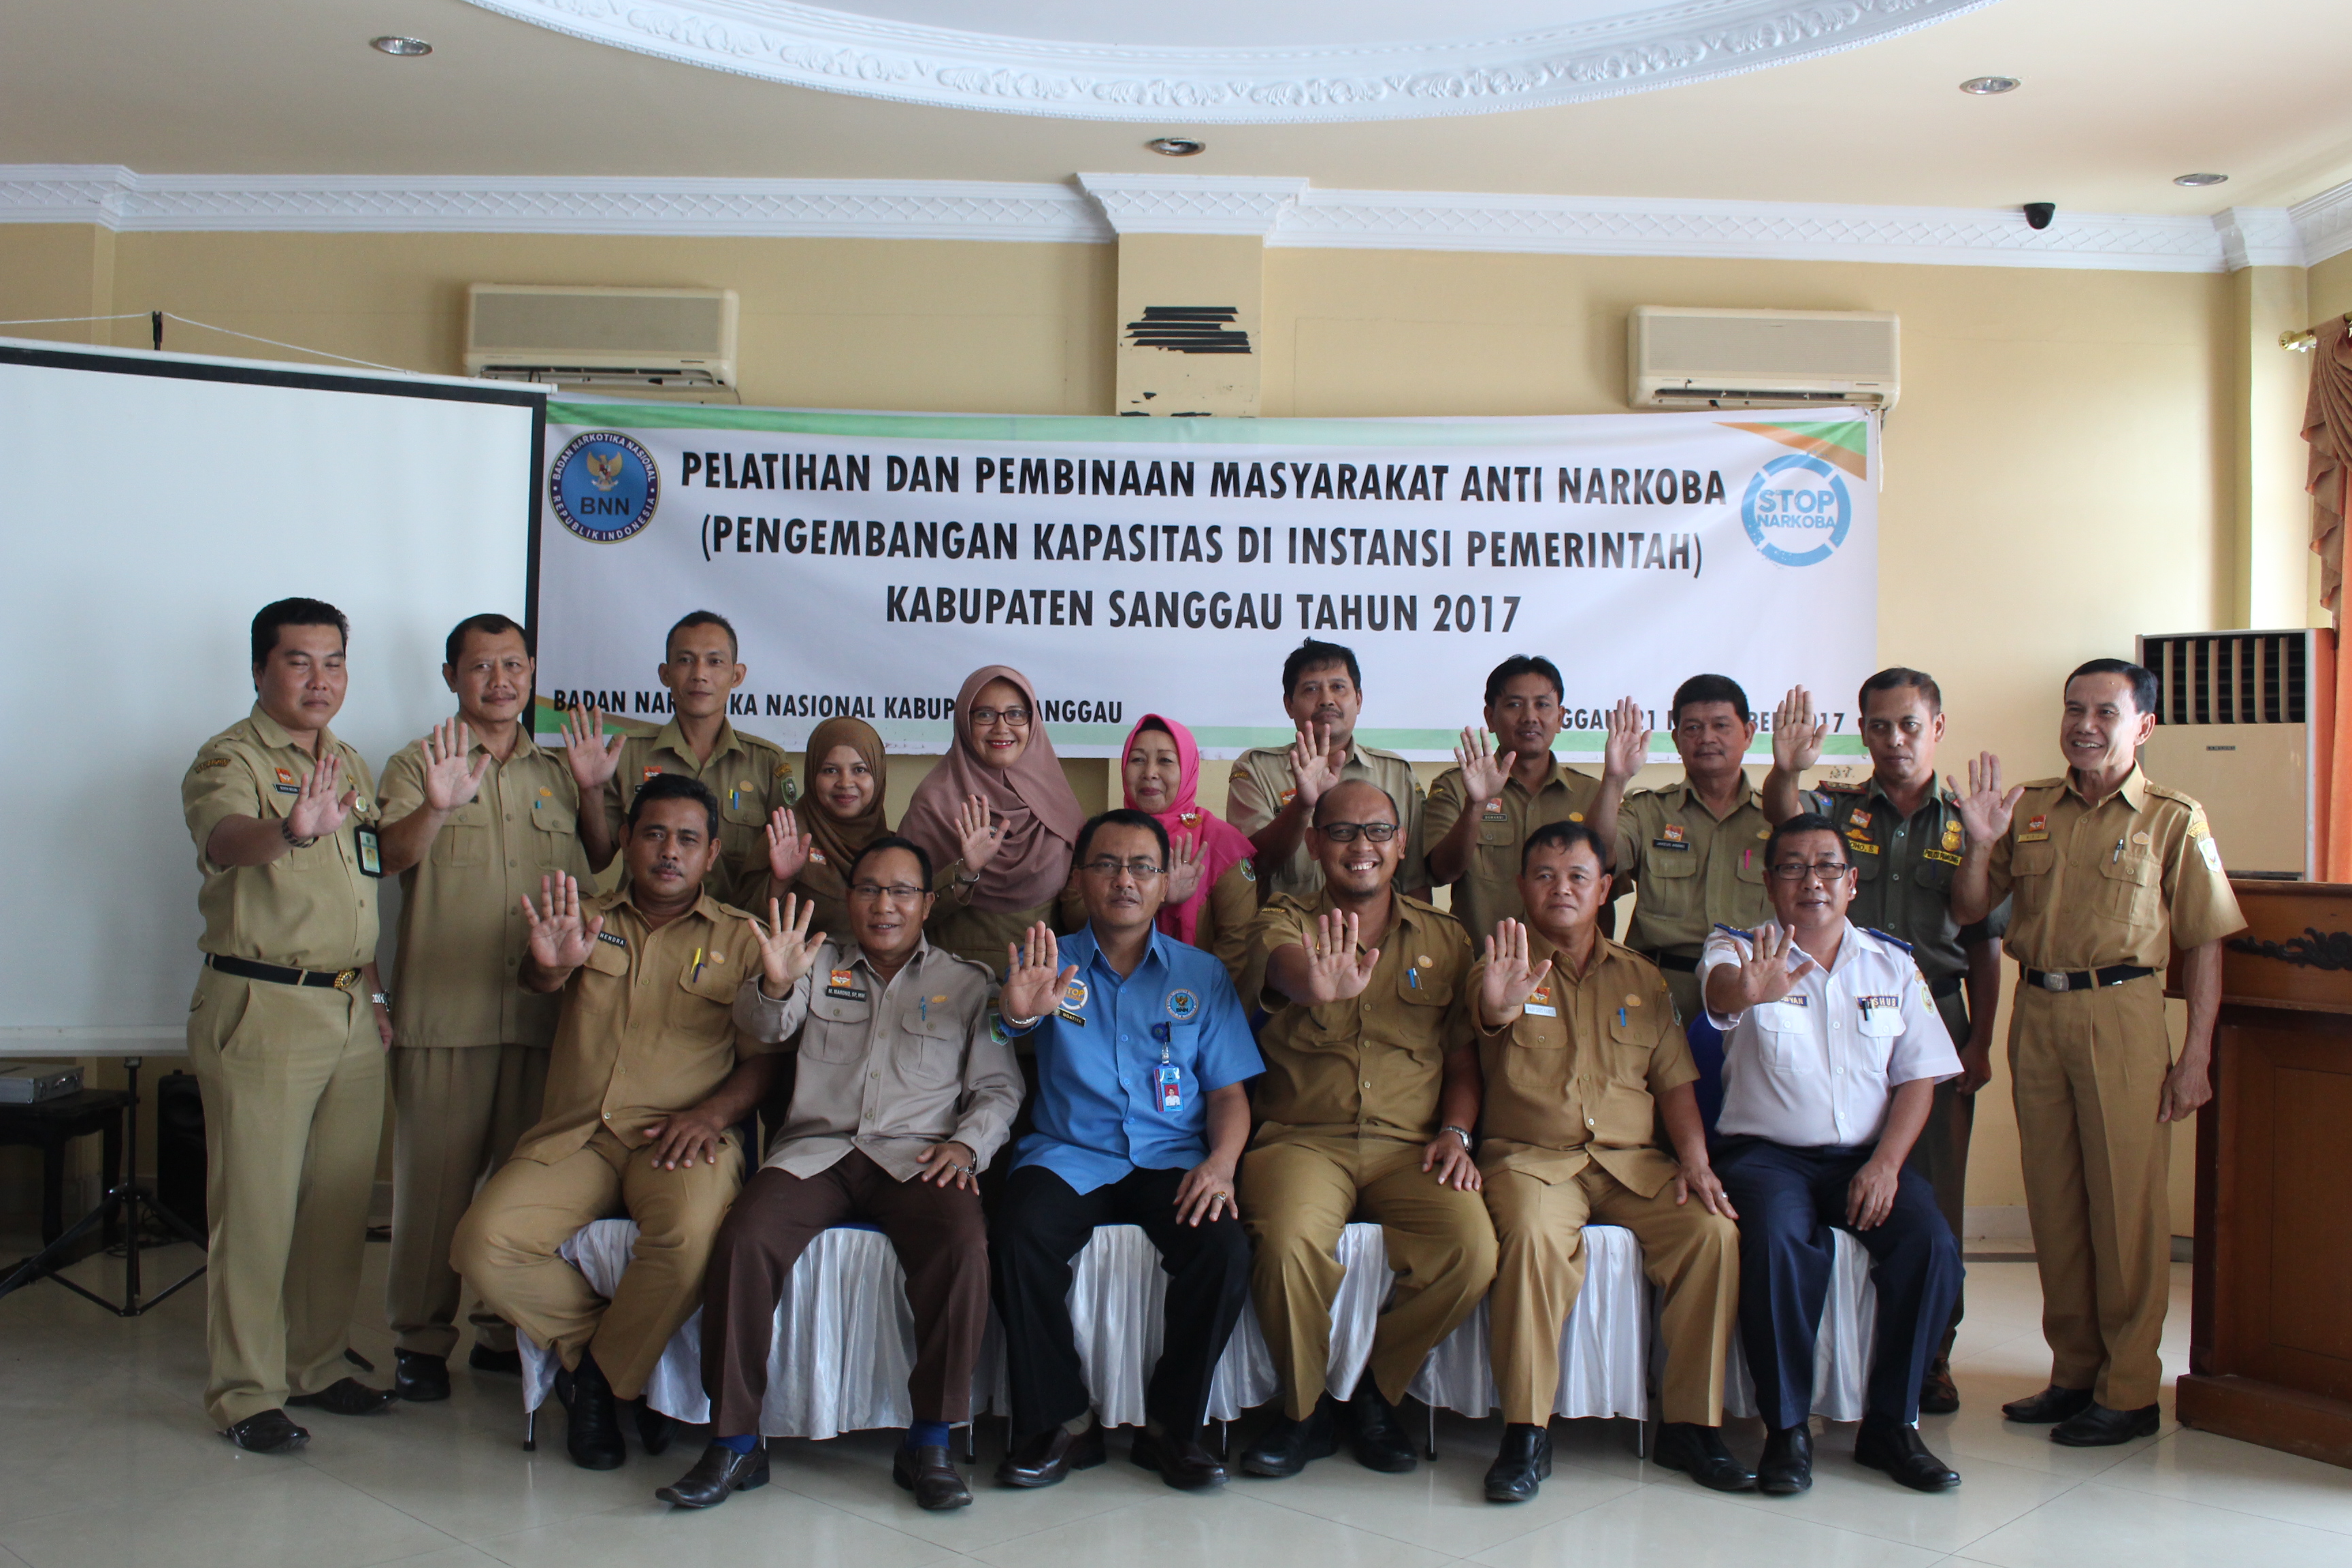 Pelatihan Dan Pembinaan Masyarakat Anti Narkoba (Pengembangan Kapasitas Di Instansi Pemerintah) Kabupaten Sanggau Tahun 2017